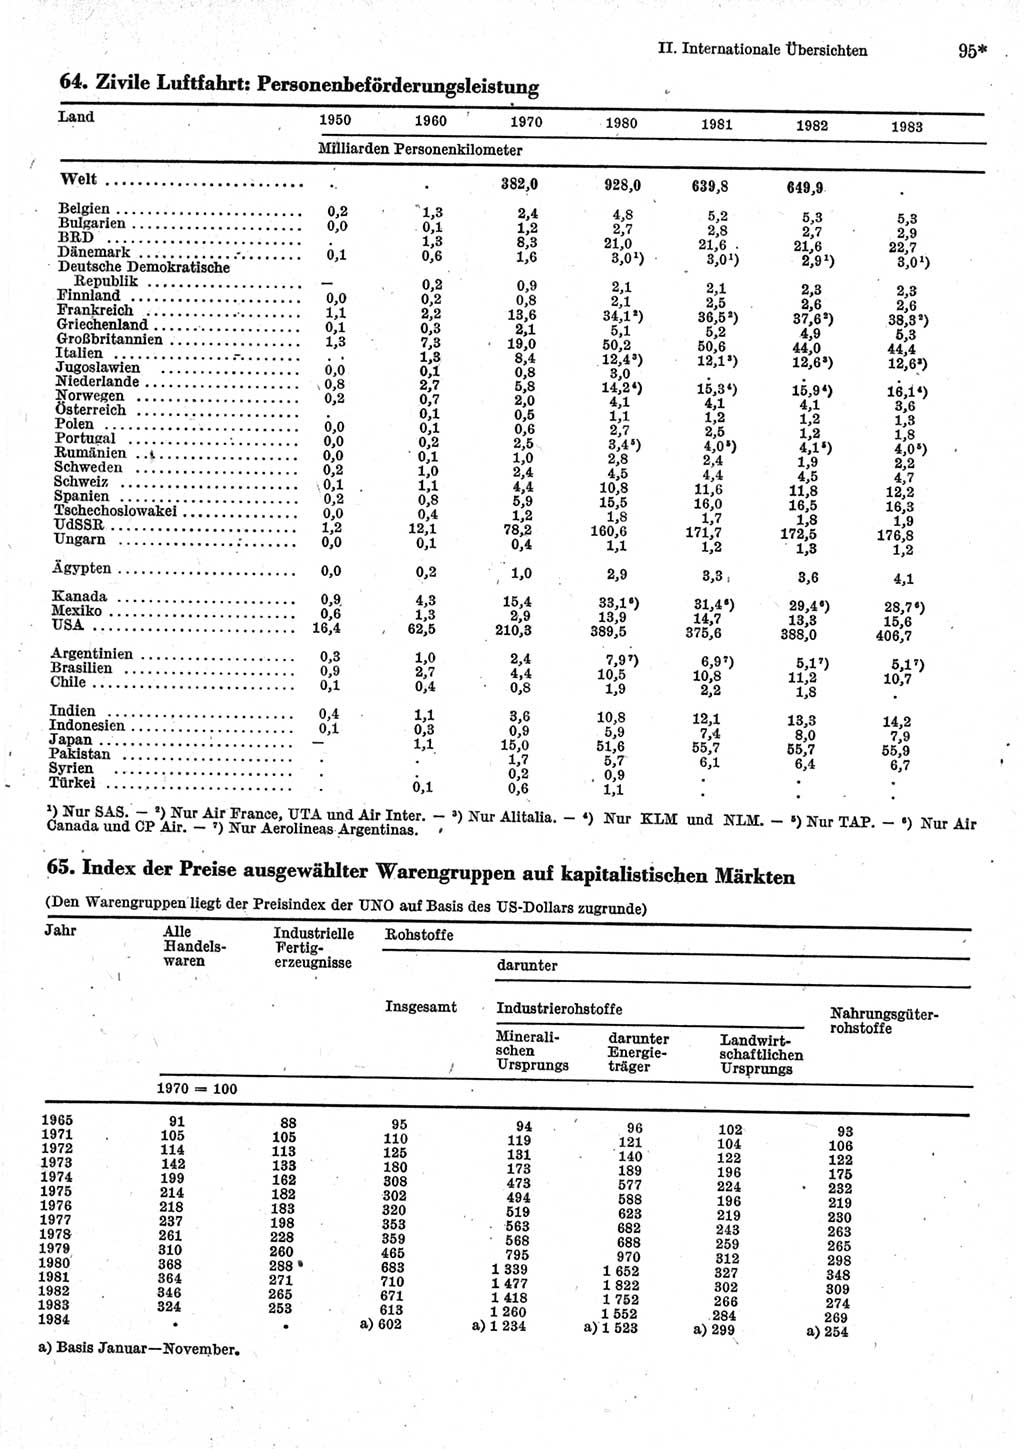 Statistisches Jahrbuch der Deutschen Demokratischen Republik (DDR) 1985, Seite 95 (Stat. Jb. DDR 1985, S. 95)